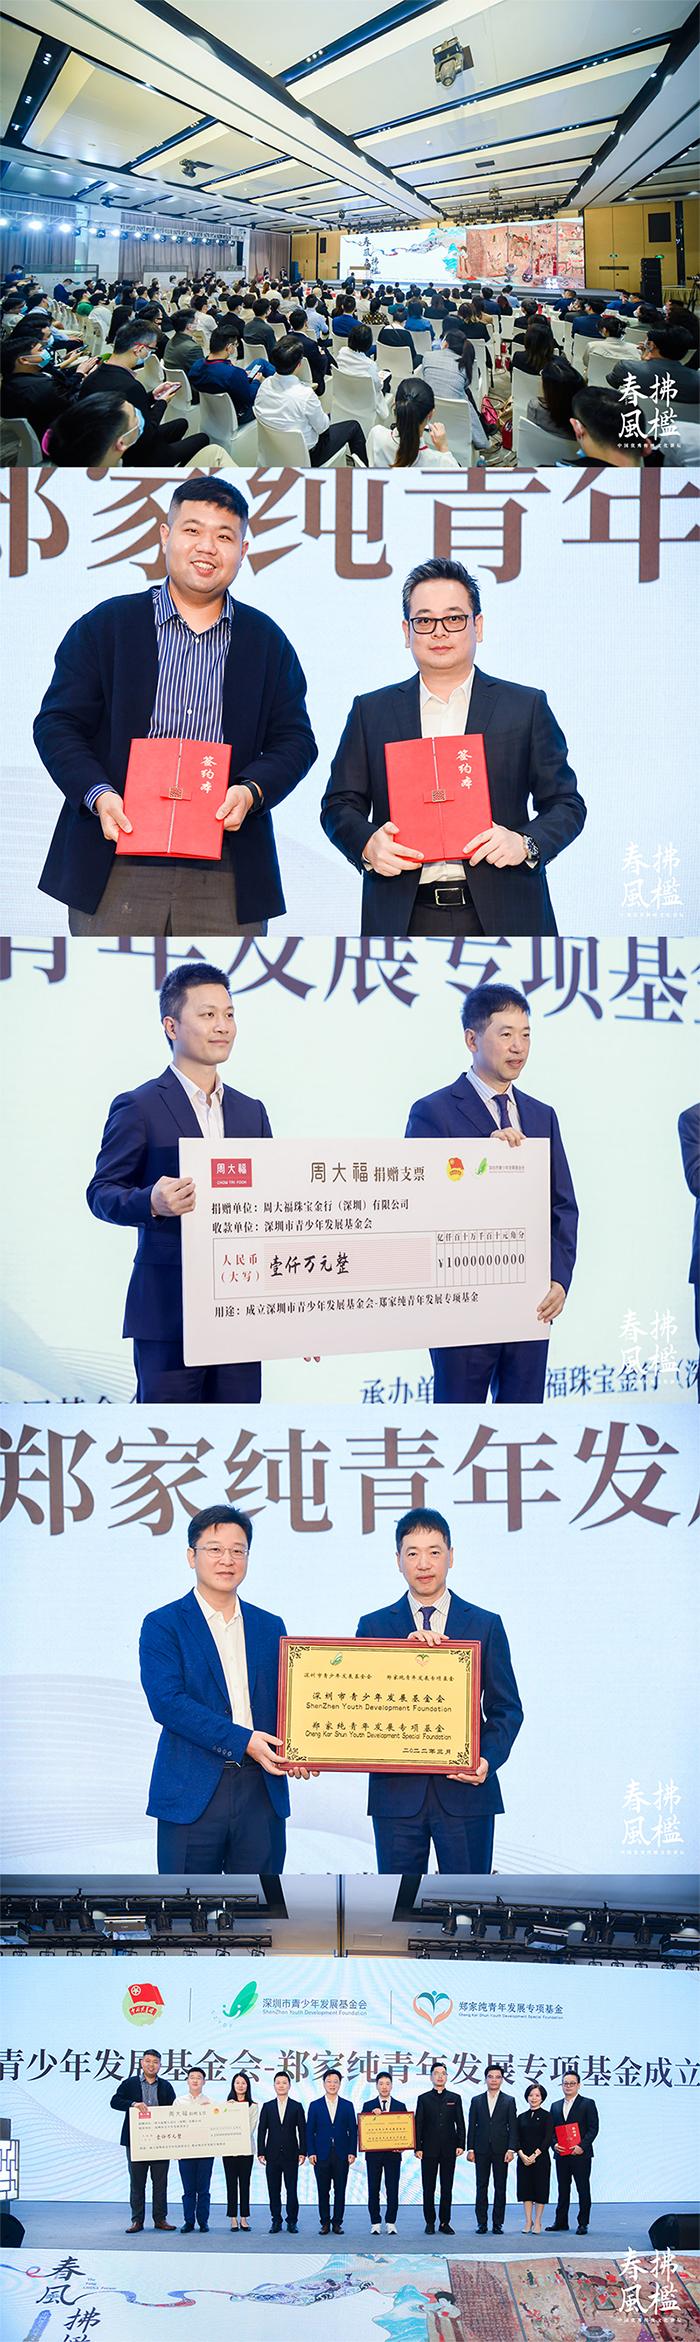 深圳市青少年发展基金会-郑家纯青年发展专项基金正式成立